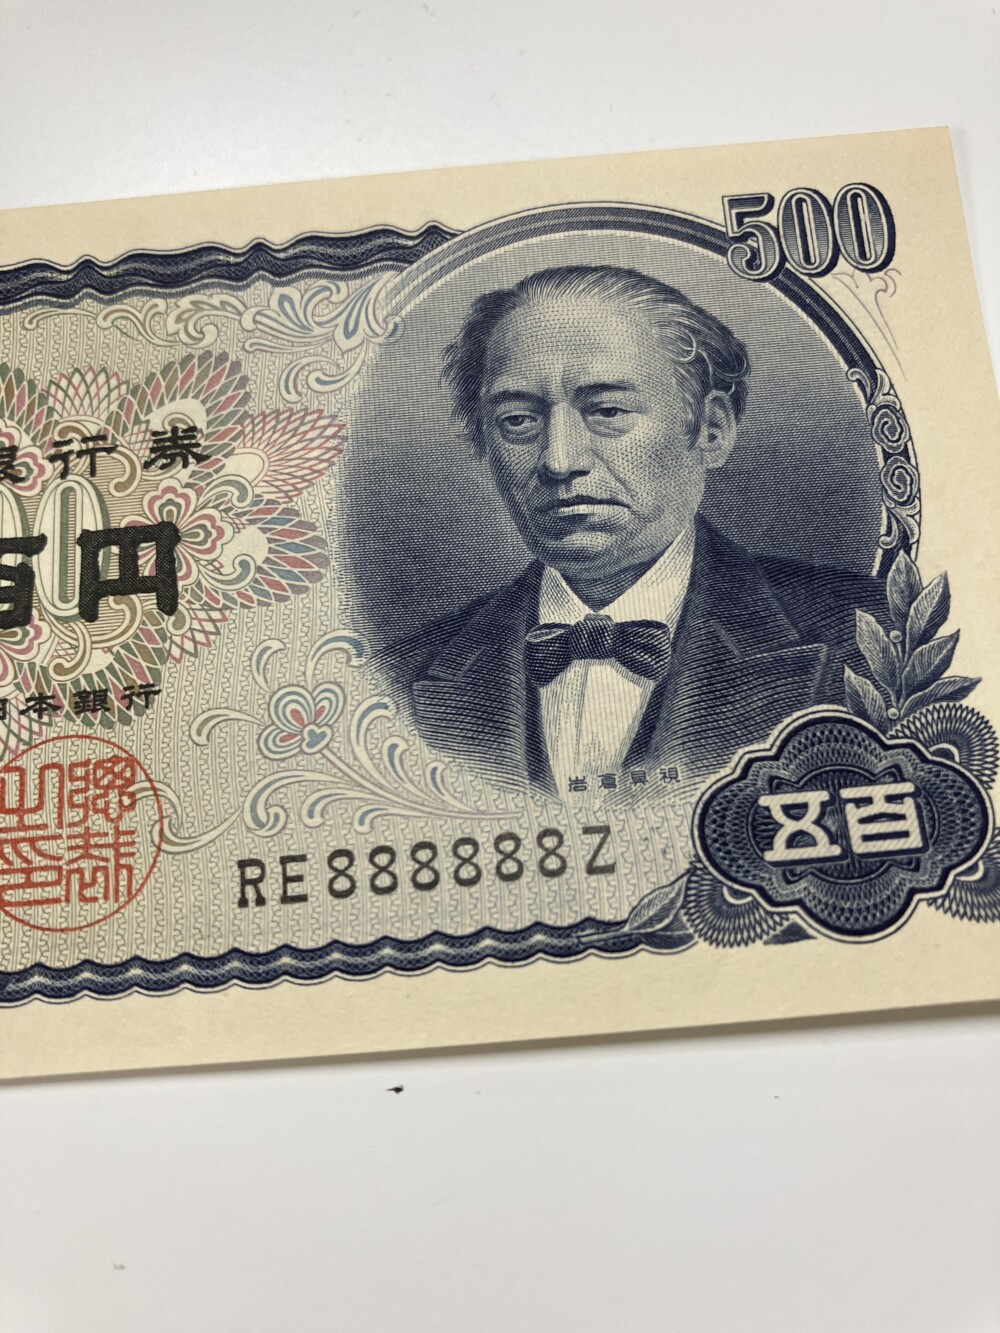 岩倉具視 新500円札の8ゾロ目紙幣の買取実績